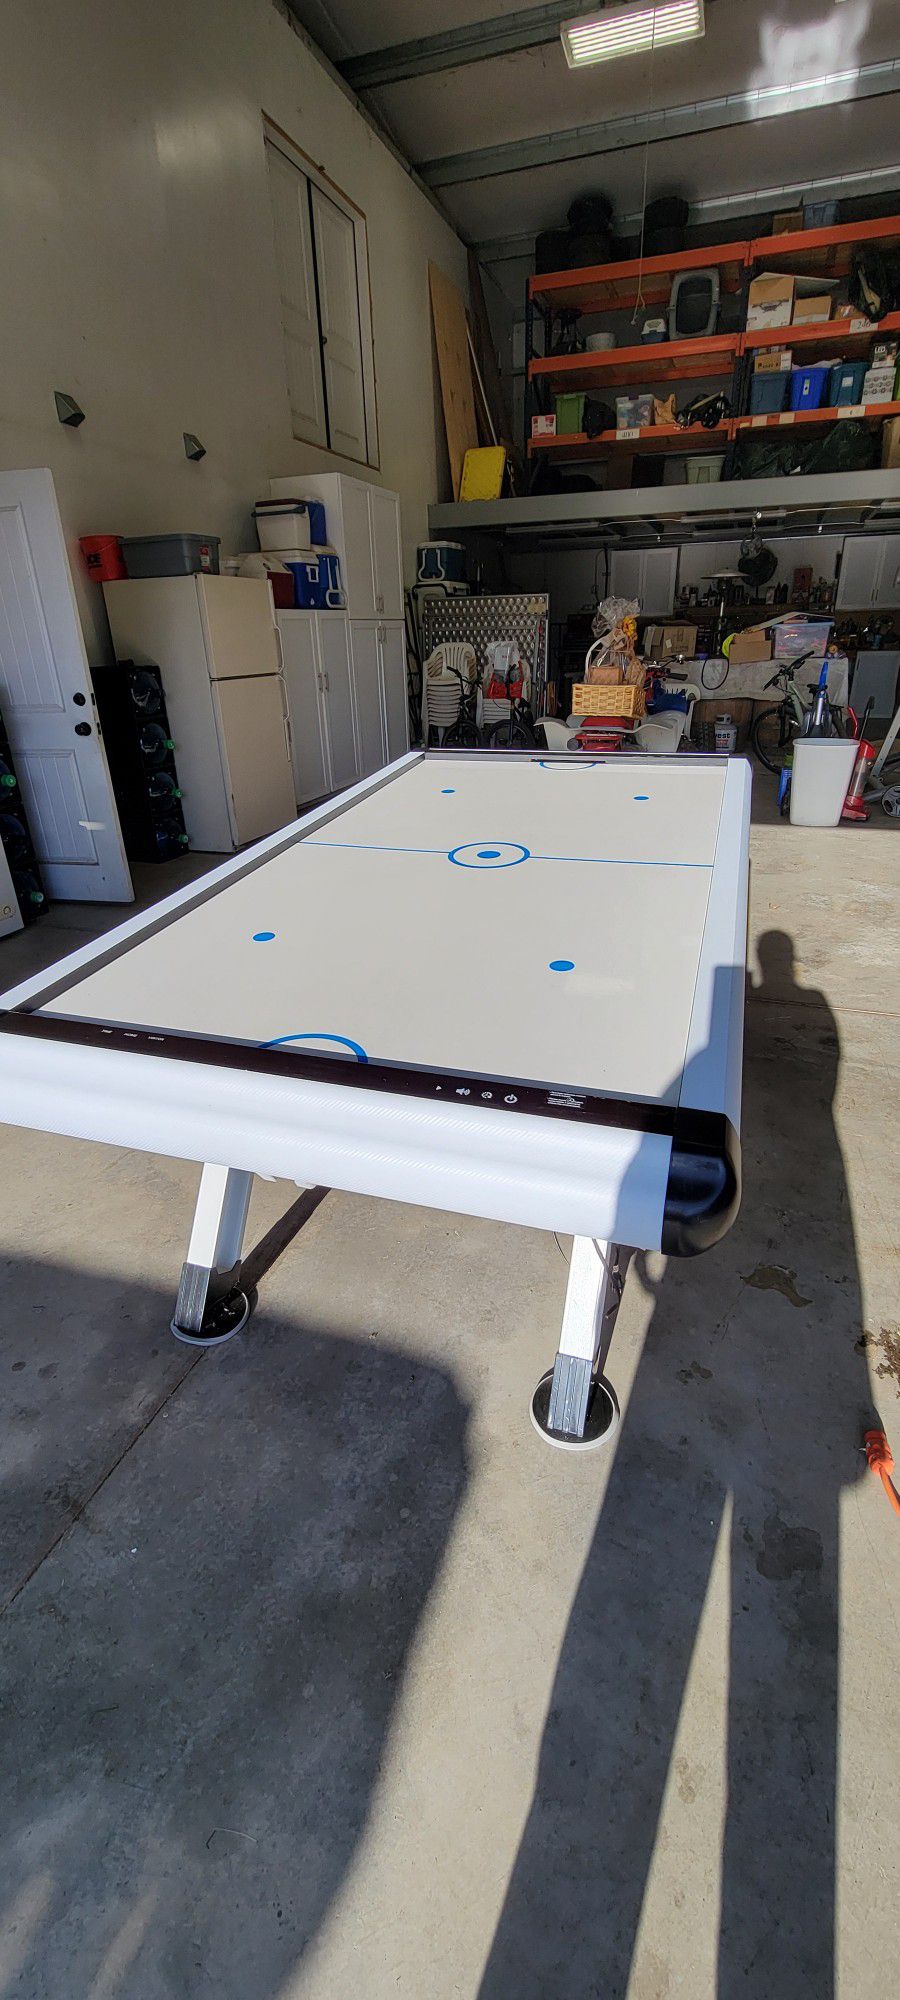 Automated Air Hockey Table